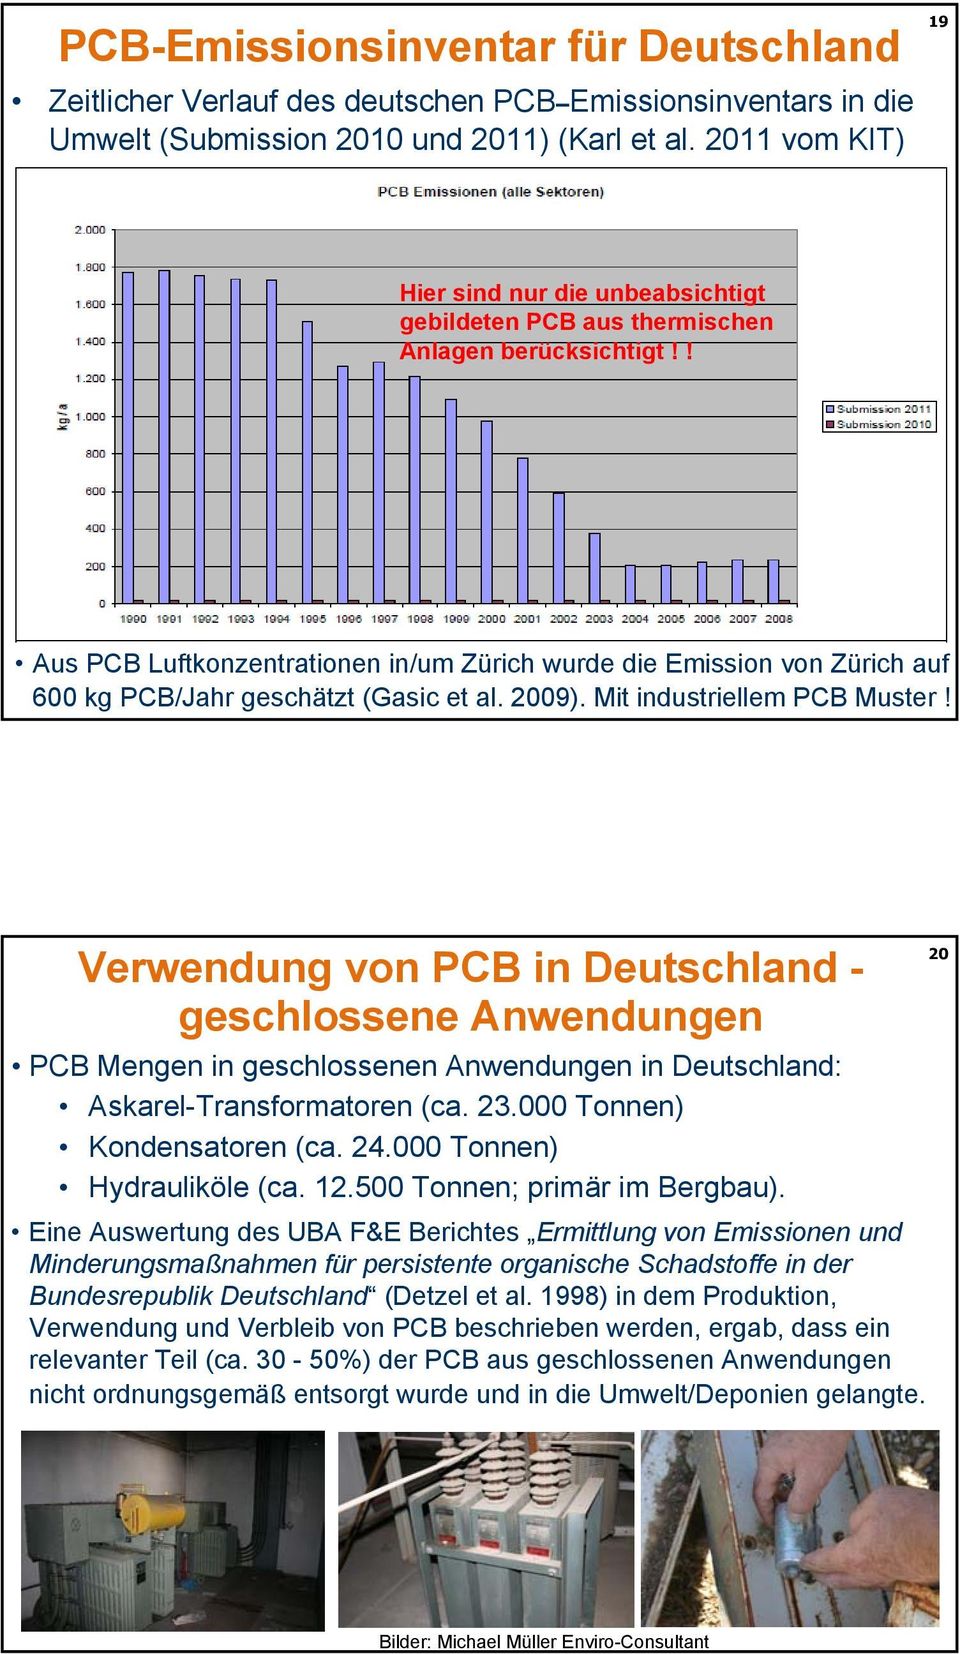 ! Aus PCB Luftkonzentrationen in/um Zürich wurde die Emission von Zürich auf 600 kg PCB/Jahr geschätzt (Gasic et al. 2009). Mit industriellem PCB Muster!